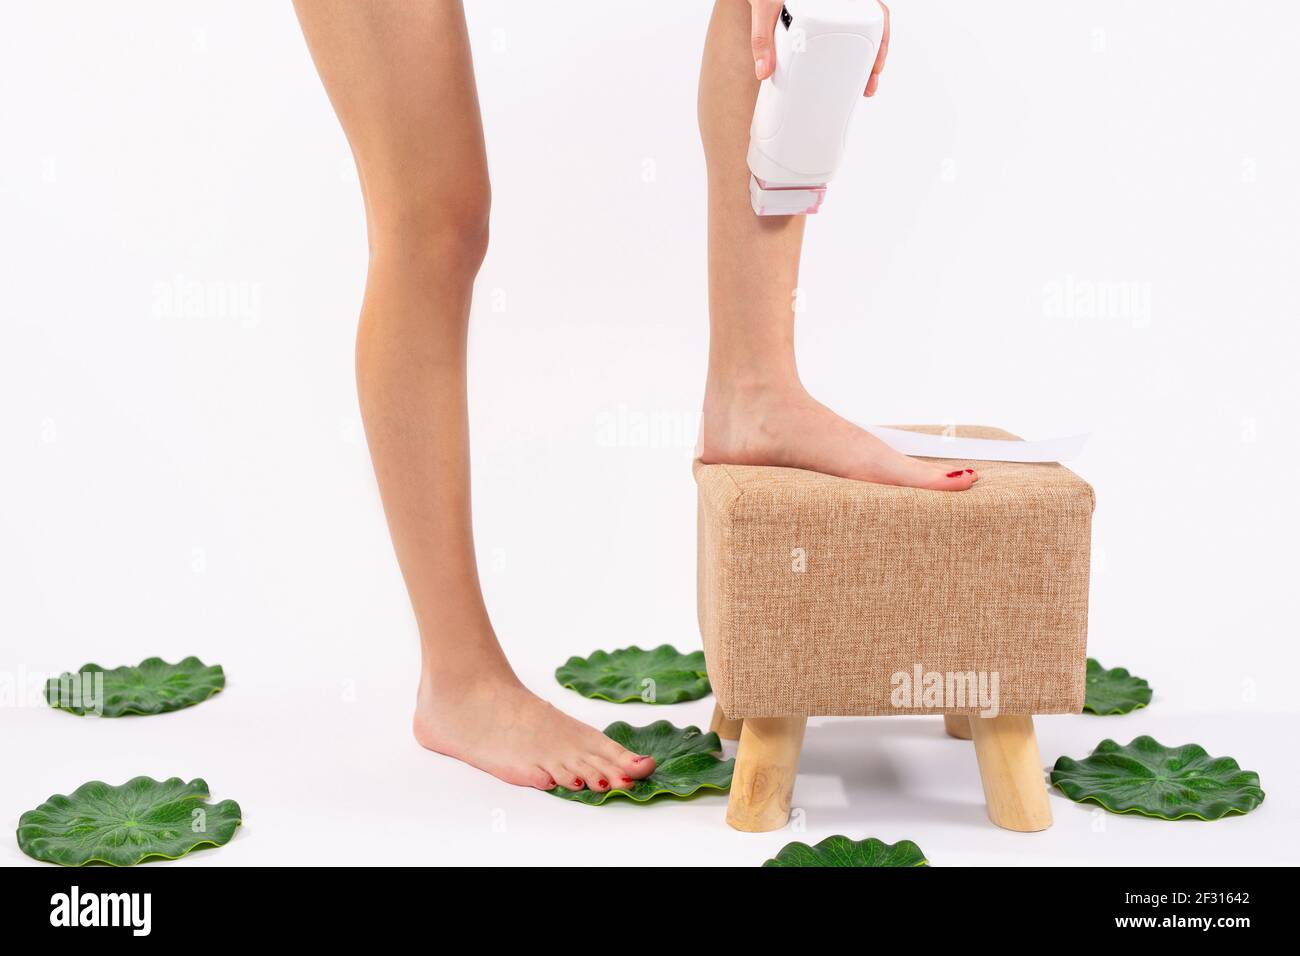 Eliminación del vello. Ajuste a la mujer joven encerando sus piernas con un  calentador de cera depilatorio de rodillo portátil para indoloro. Producto  para el cuidado de la piel, salud femenina y